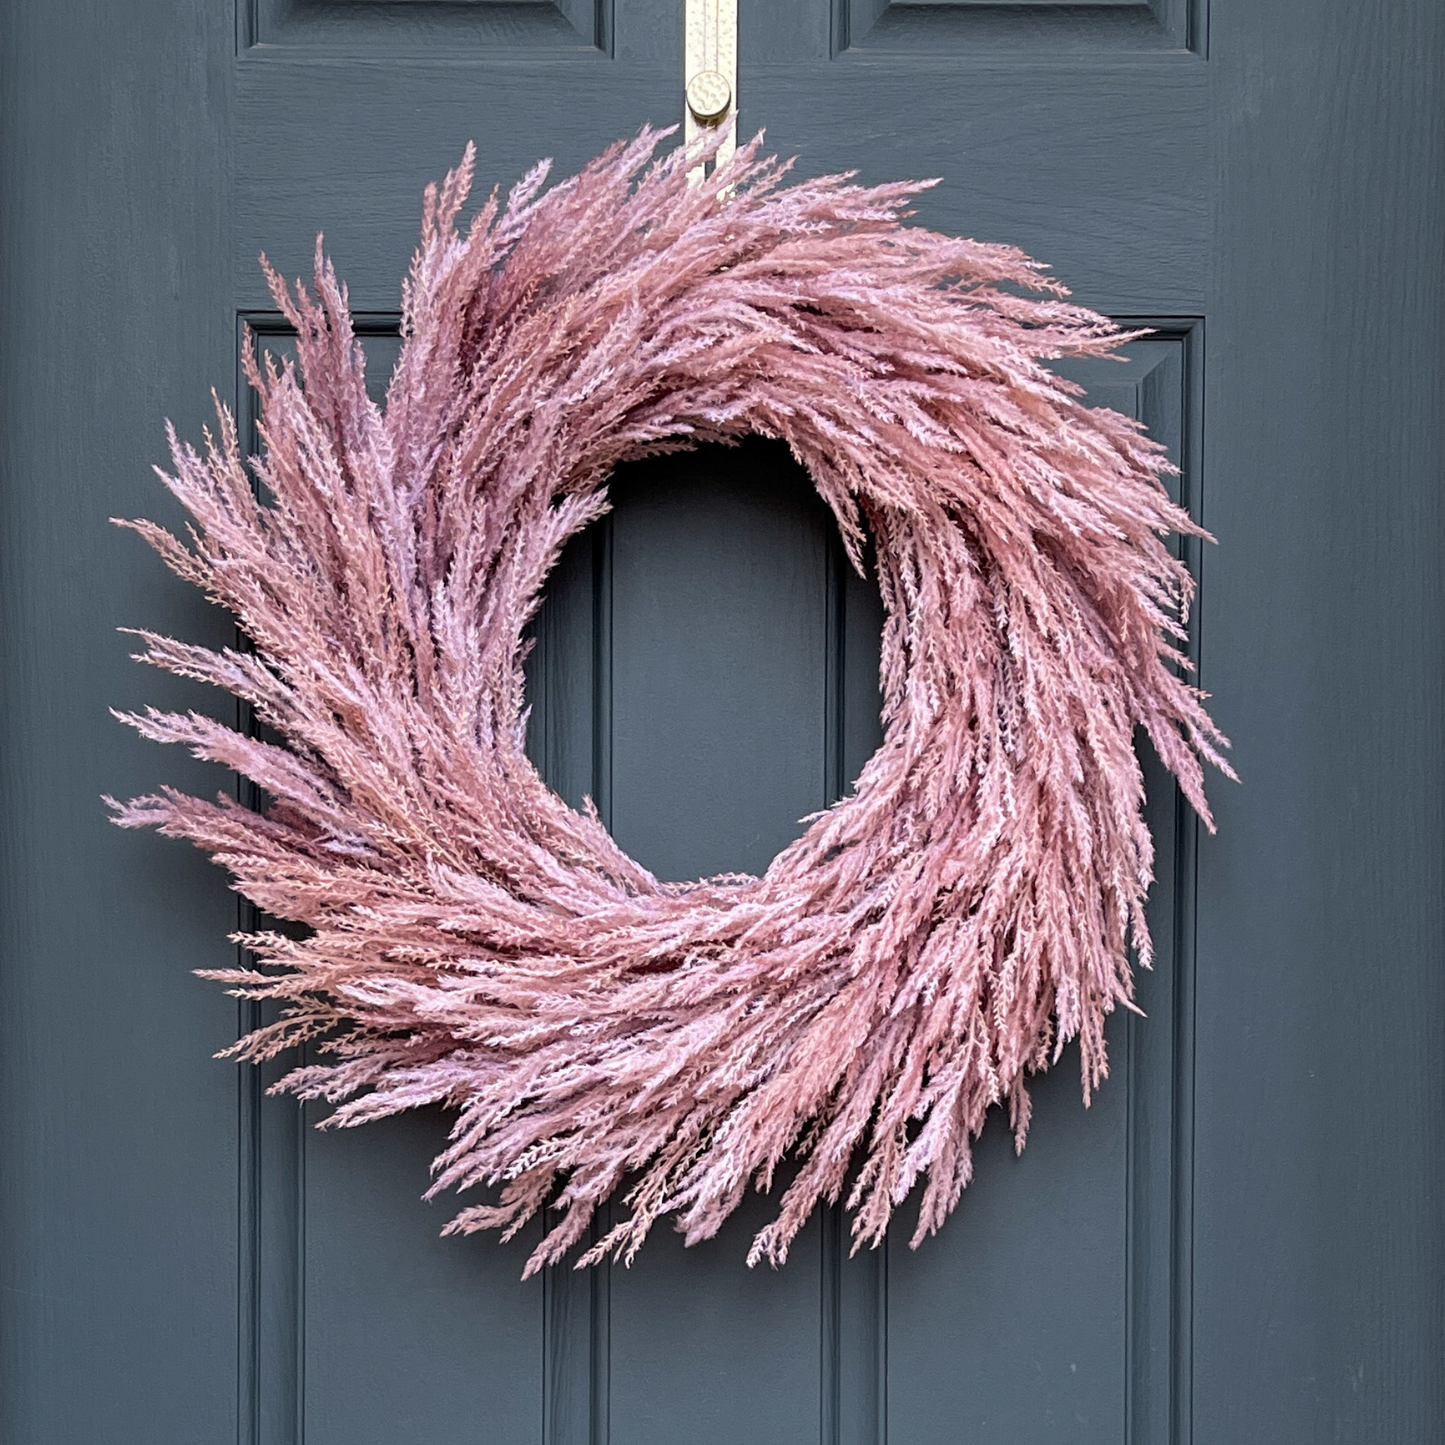 27" modern fall boho wreath, featuring artificial pink flocked pampas grass hanging from a gold wreath hanger on a dark blue door